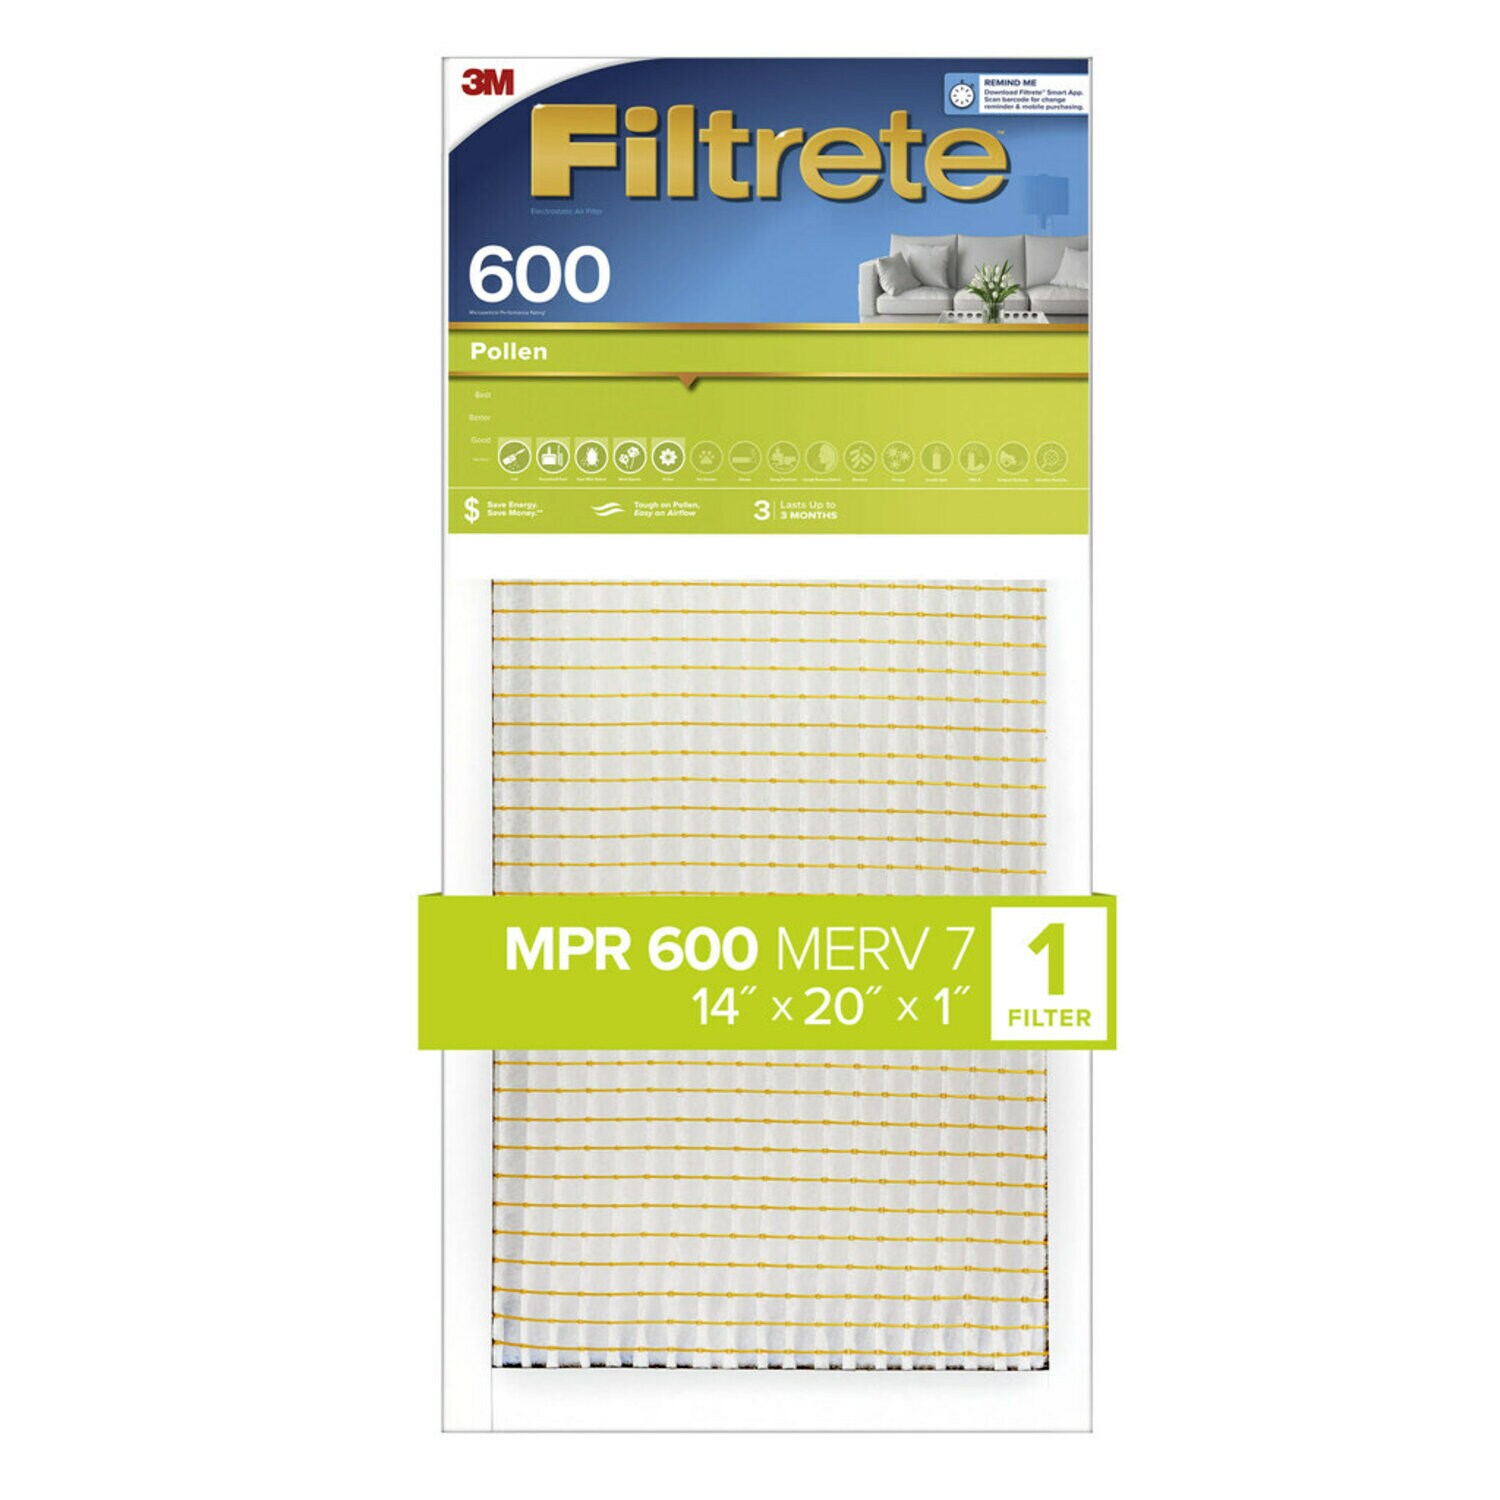 7100187098 - Filtrete Pollen Air Filter, 600 MPR, 9835-4, 14 in x 20 in x 1 in (35,5
cm x 50,8 cm x 2,5 cm)